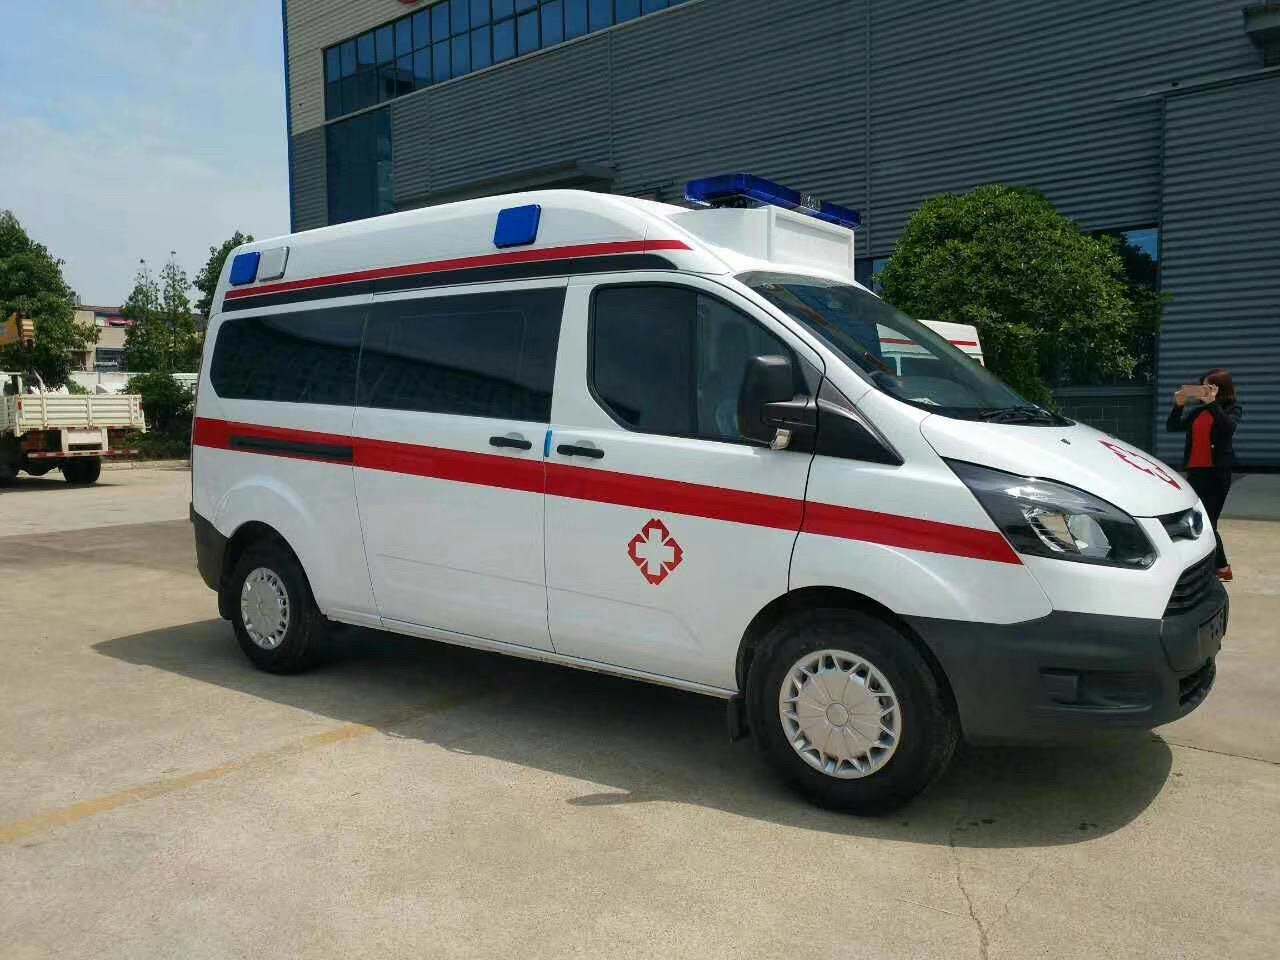 凤台县出院转院救护车